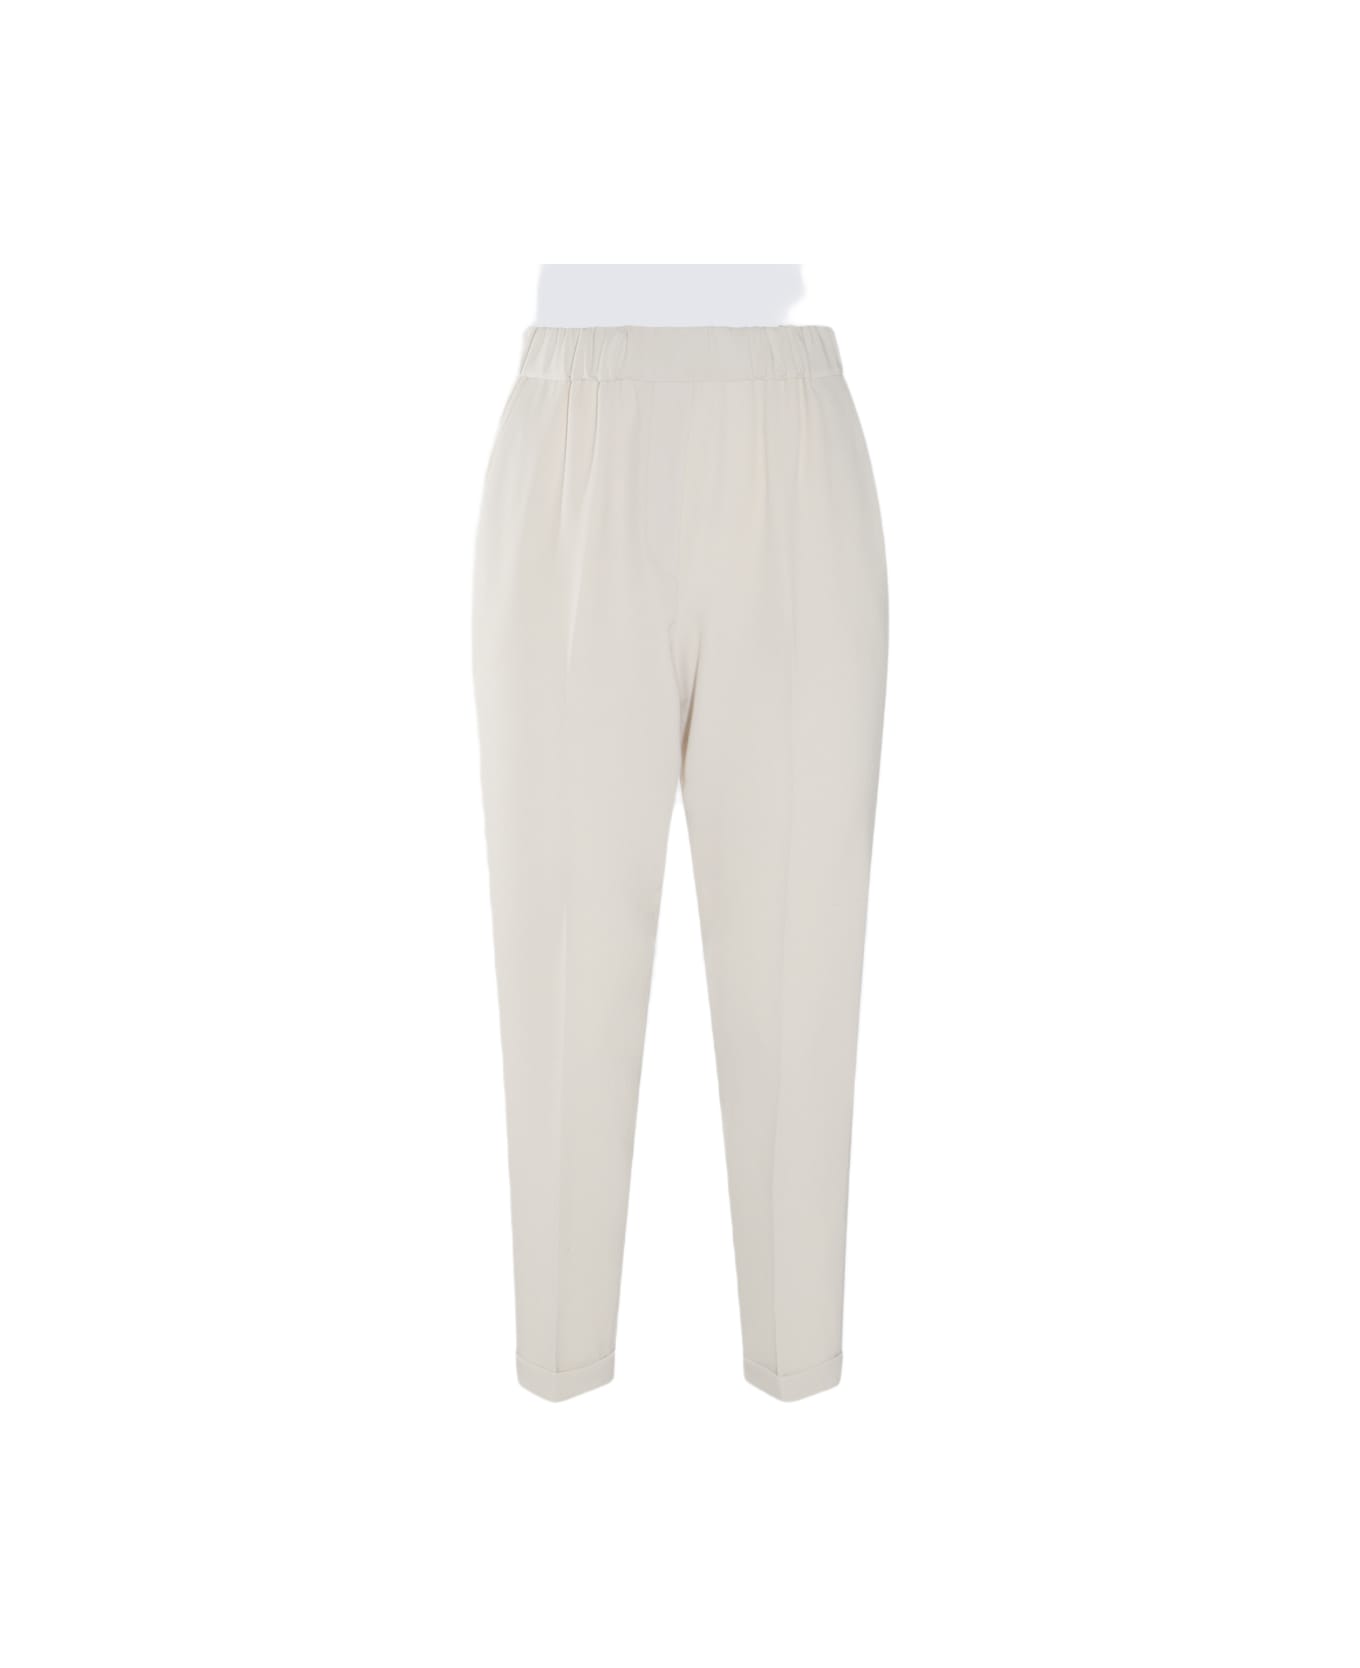 Antonelli White Cotton Pants - White ボトムス